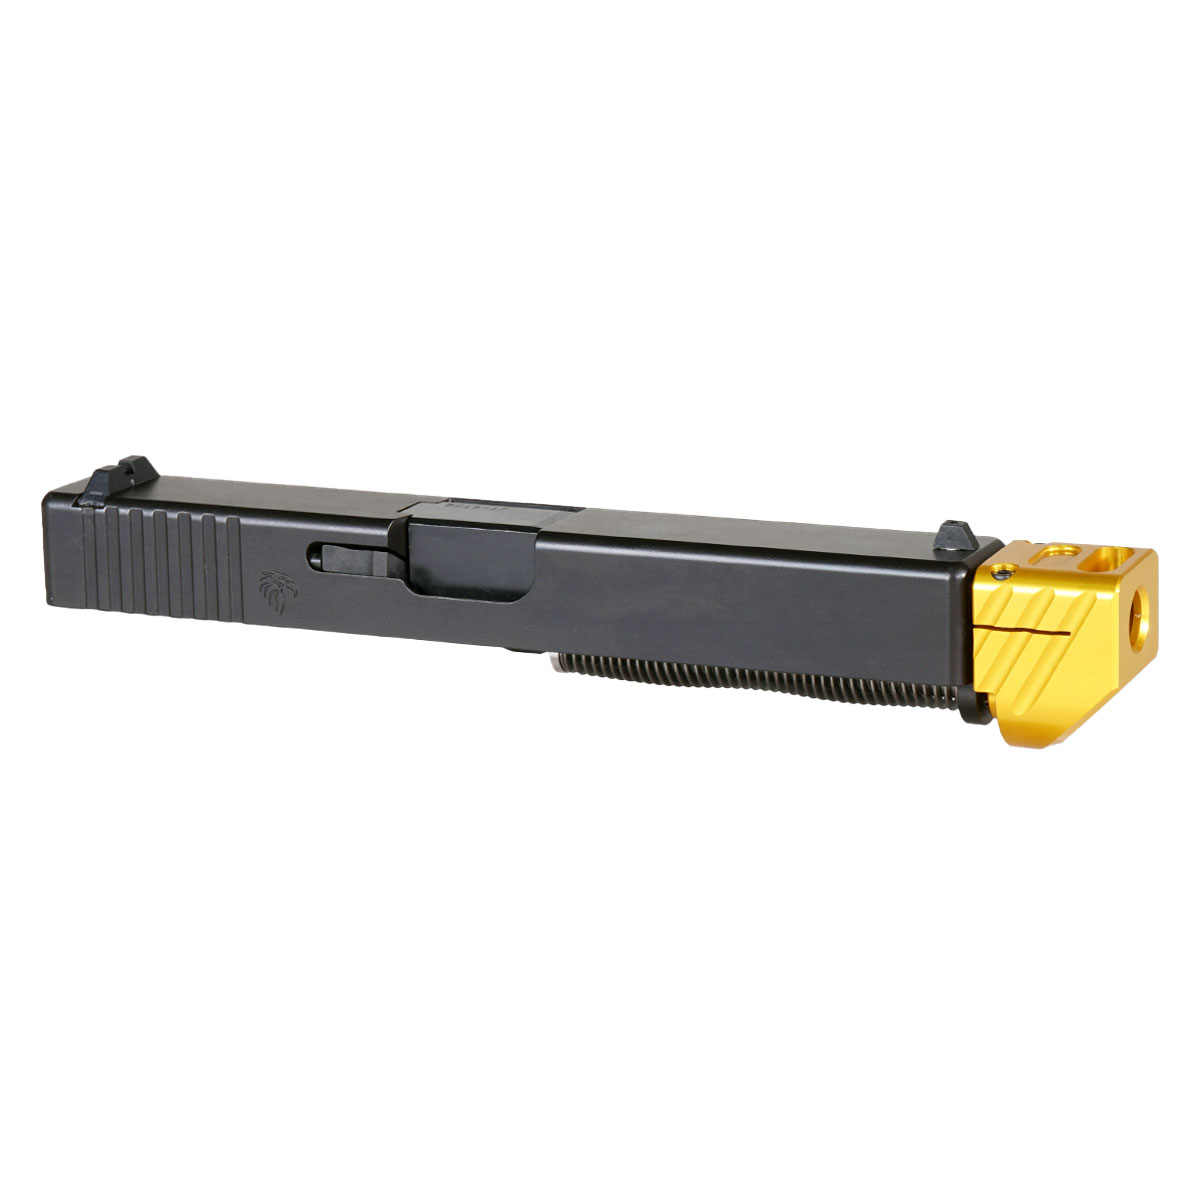 DDS 'Boomerango V2 w/ Gold Compensator' 9mm Complete Slide Kit - Glock 17 Gen 1-3 Compatible